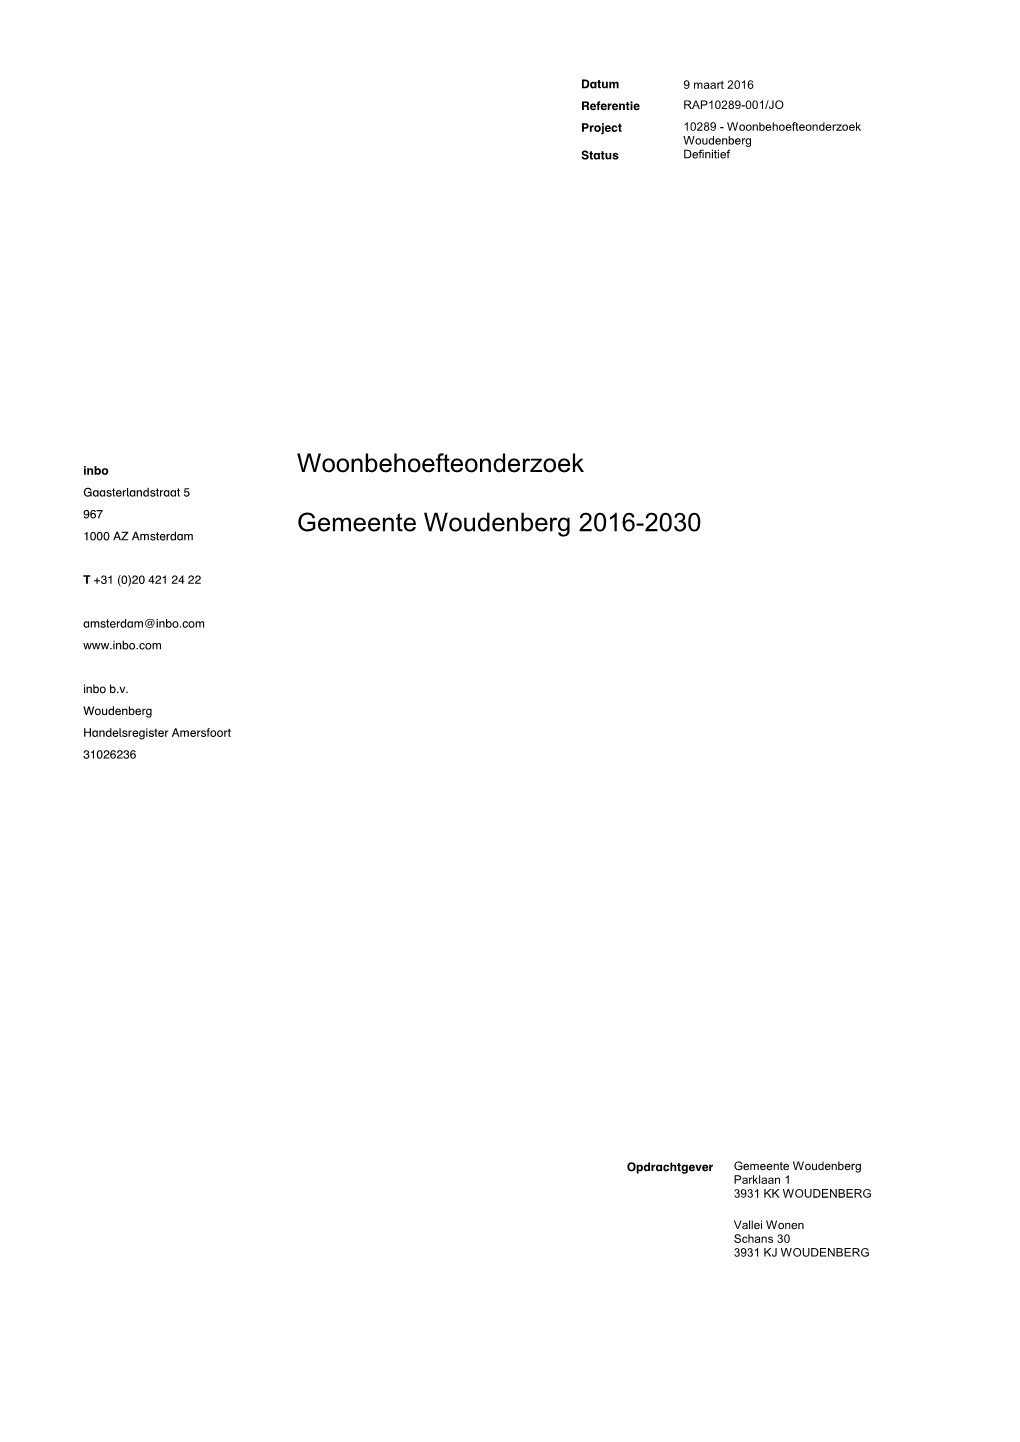 Woonbehoefteonderzoek Gemeente Woudenberg 2016-2030